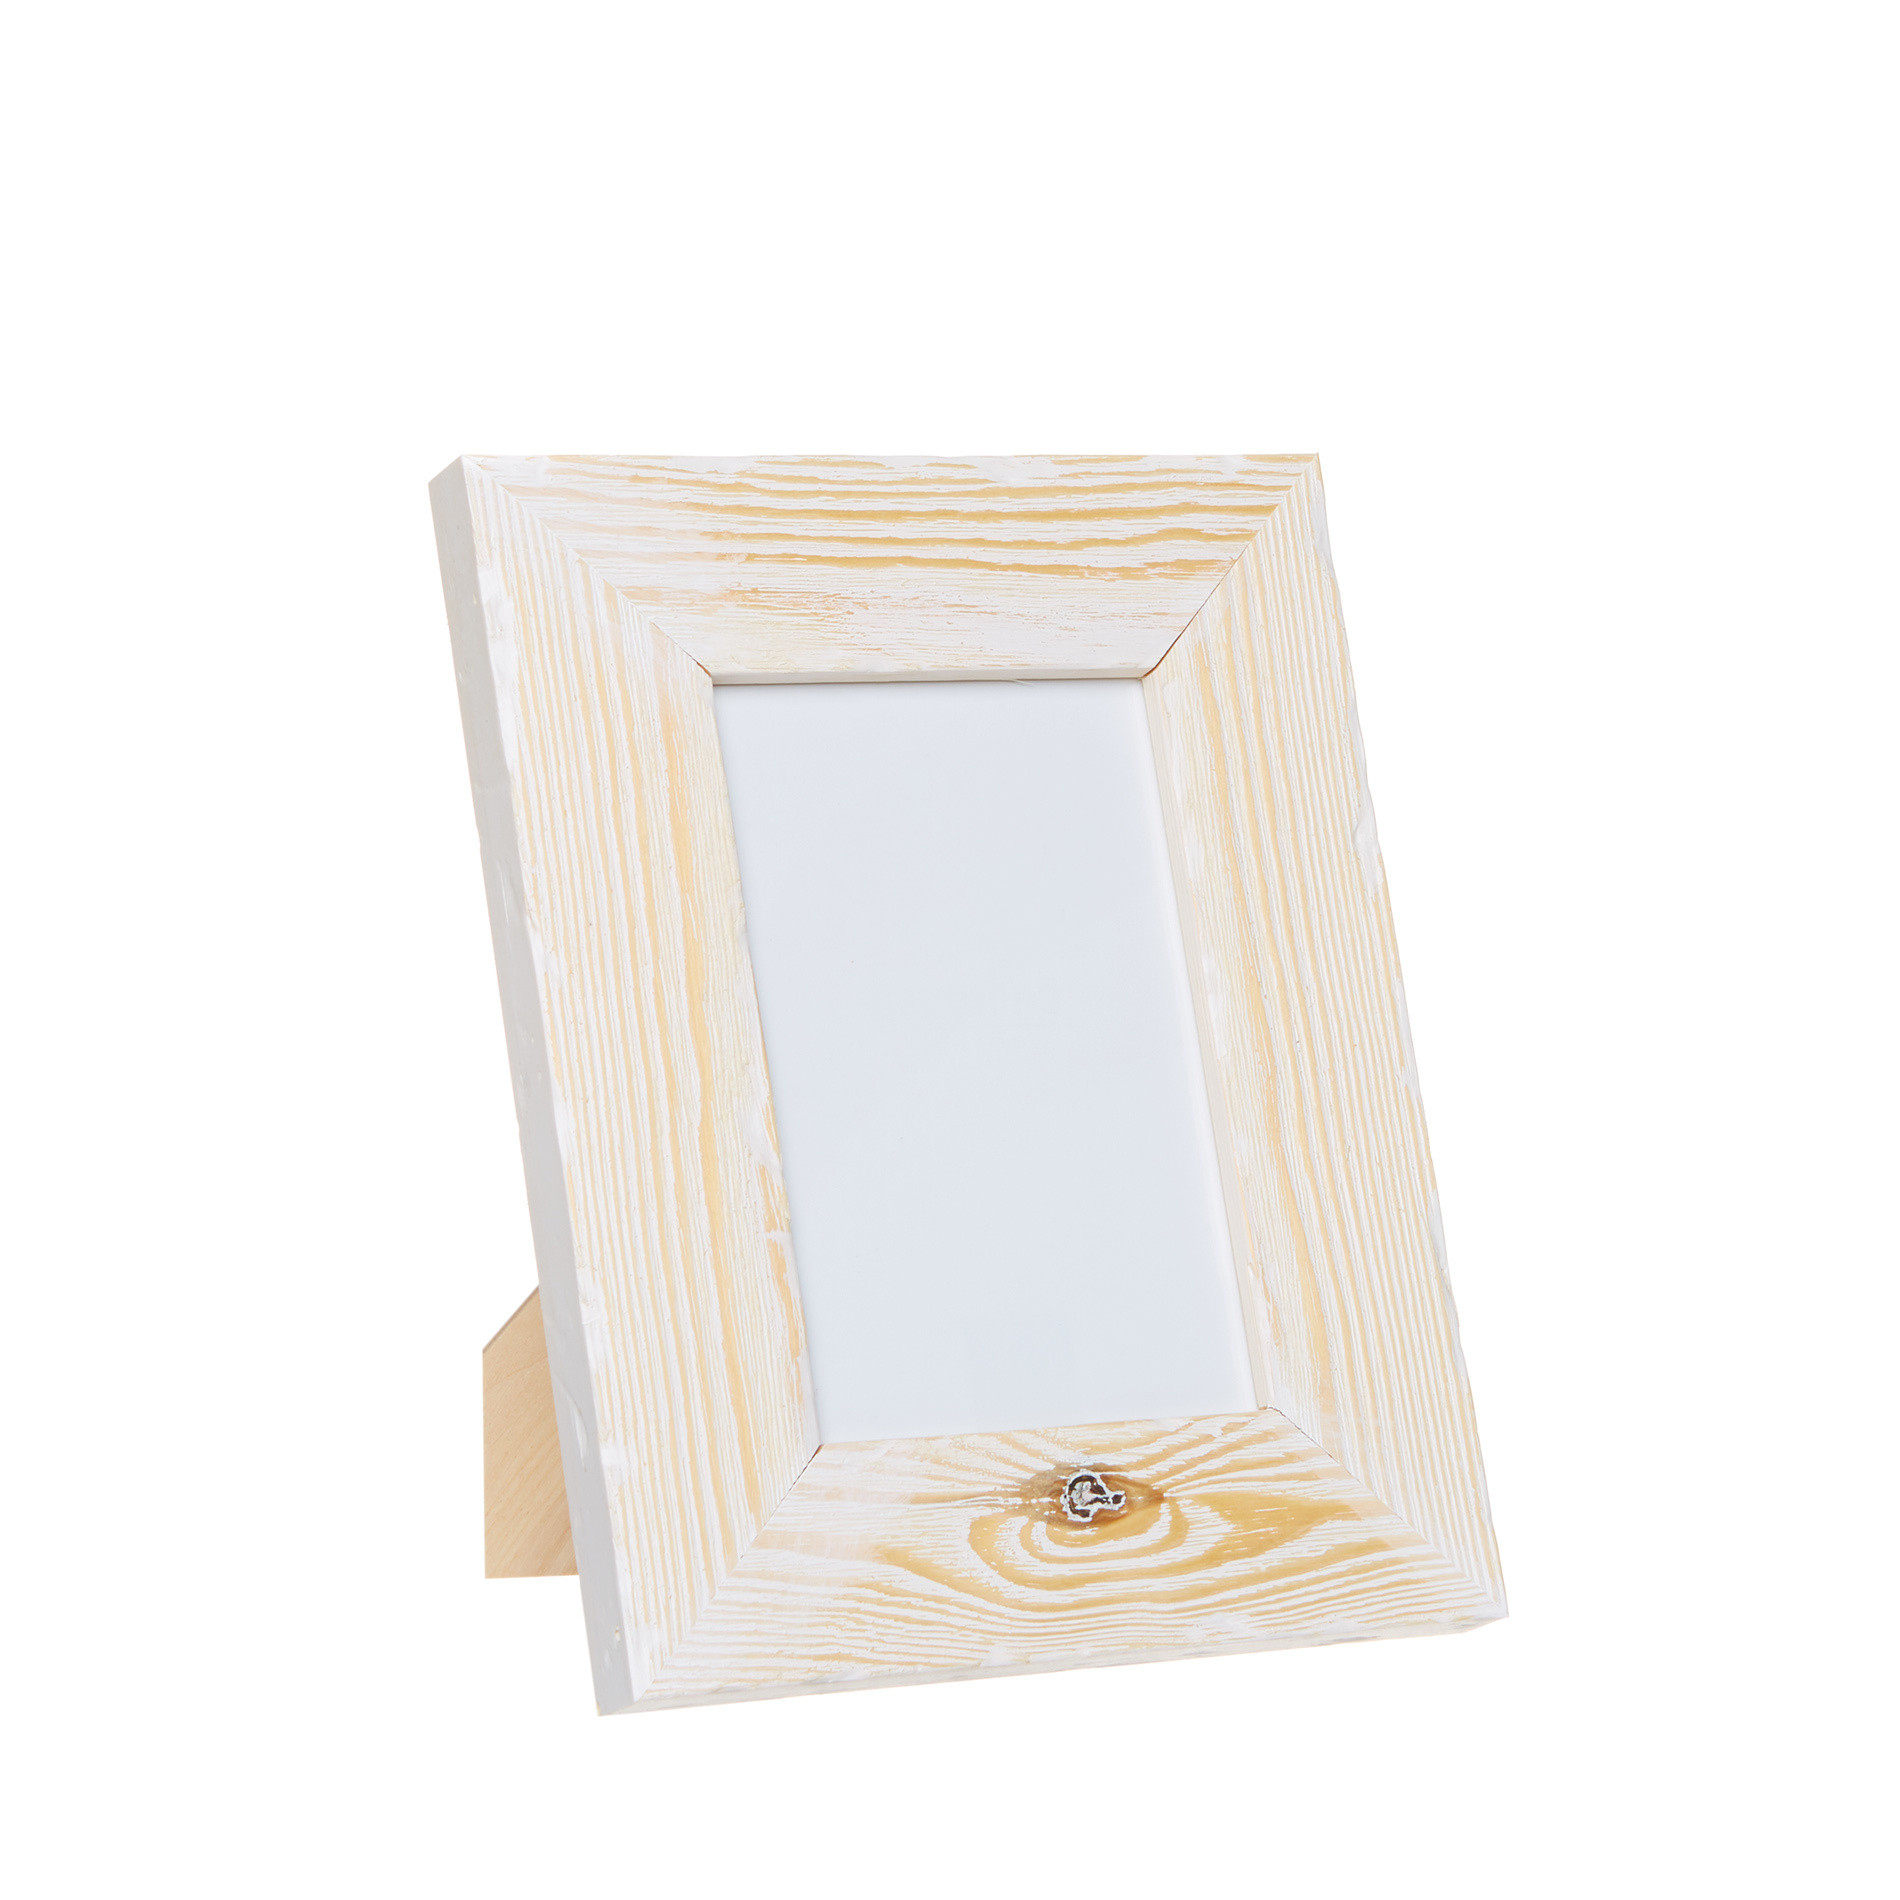 Legno Glorex Specchio Cornice di Legno Pino 13,5 x 19,5 x 1 cm Naturale Legno e Vetro 